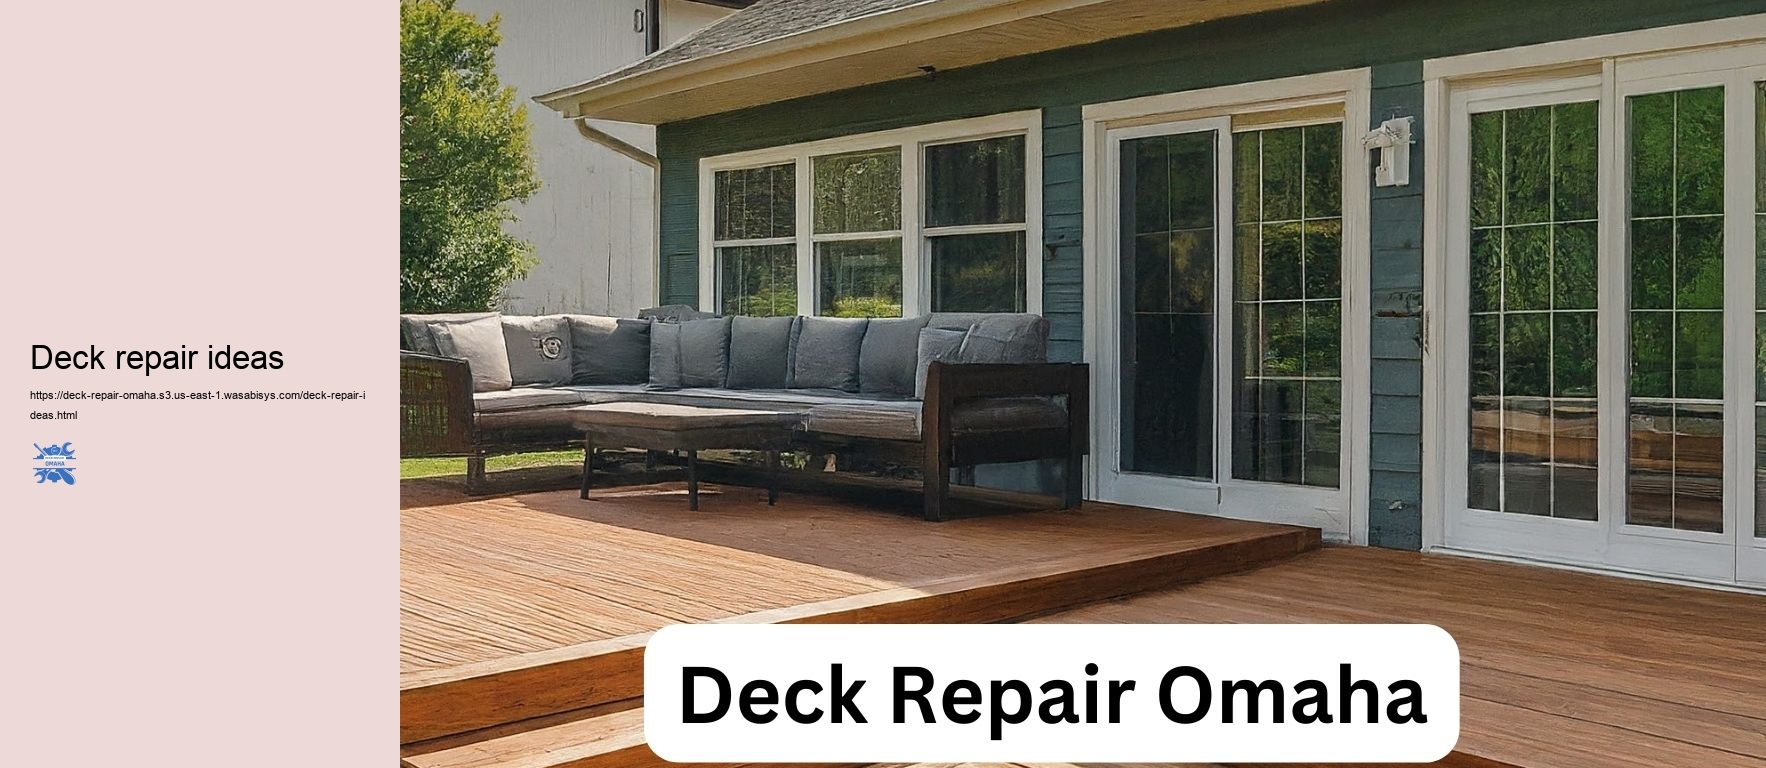 Deck repair ideas